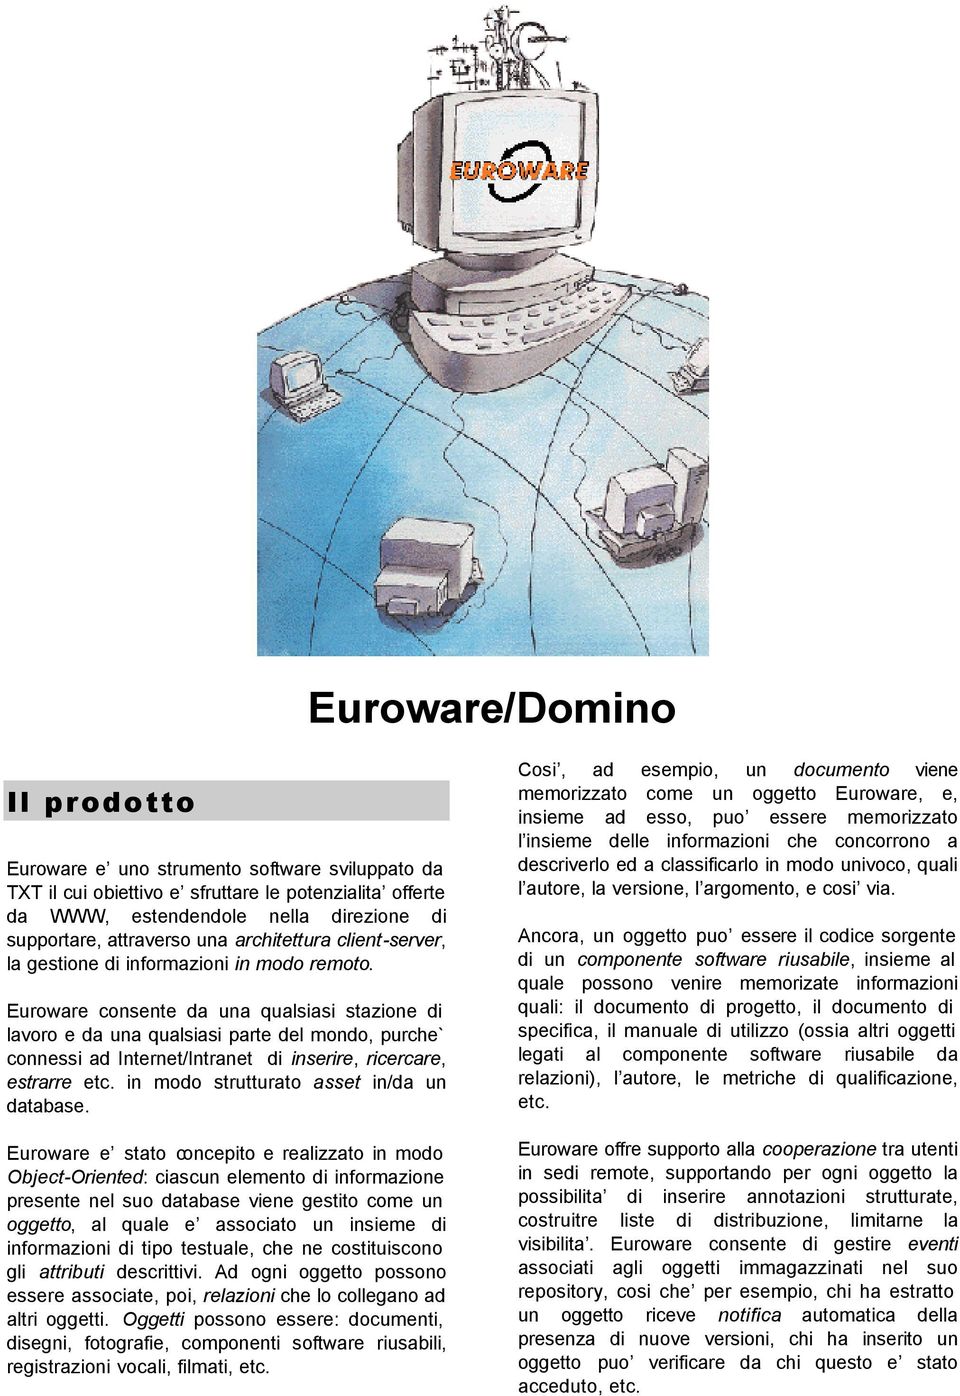 Euroware consente da una qualsiasi stazione di lavoro e da una qualsiasi parte del mondo, purche` connessi ad Internet/Intranet di inserire, ricercare, estrarre etc.